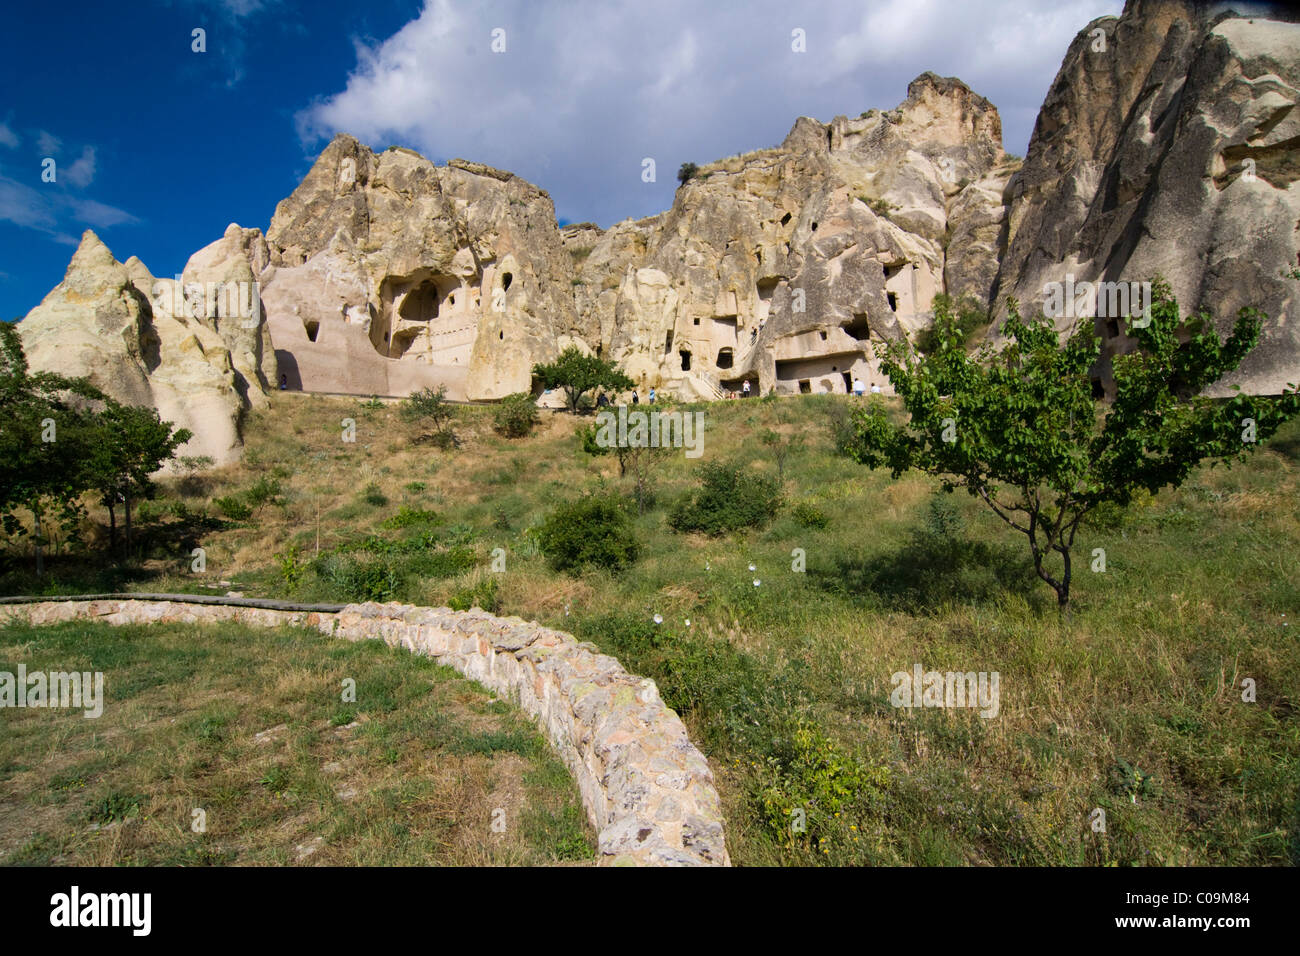 Chiese rupestri nel museo a cielo aperto, sito Patrimonio Mondiale dell'UNESCO, Goreme, Cappadocia, Anatolia centrale, Turchia, Asia Foto Stock